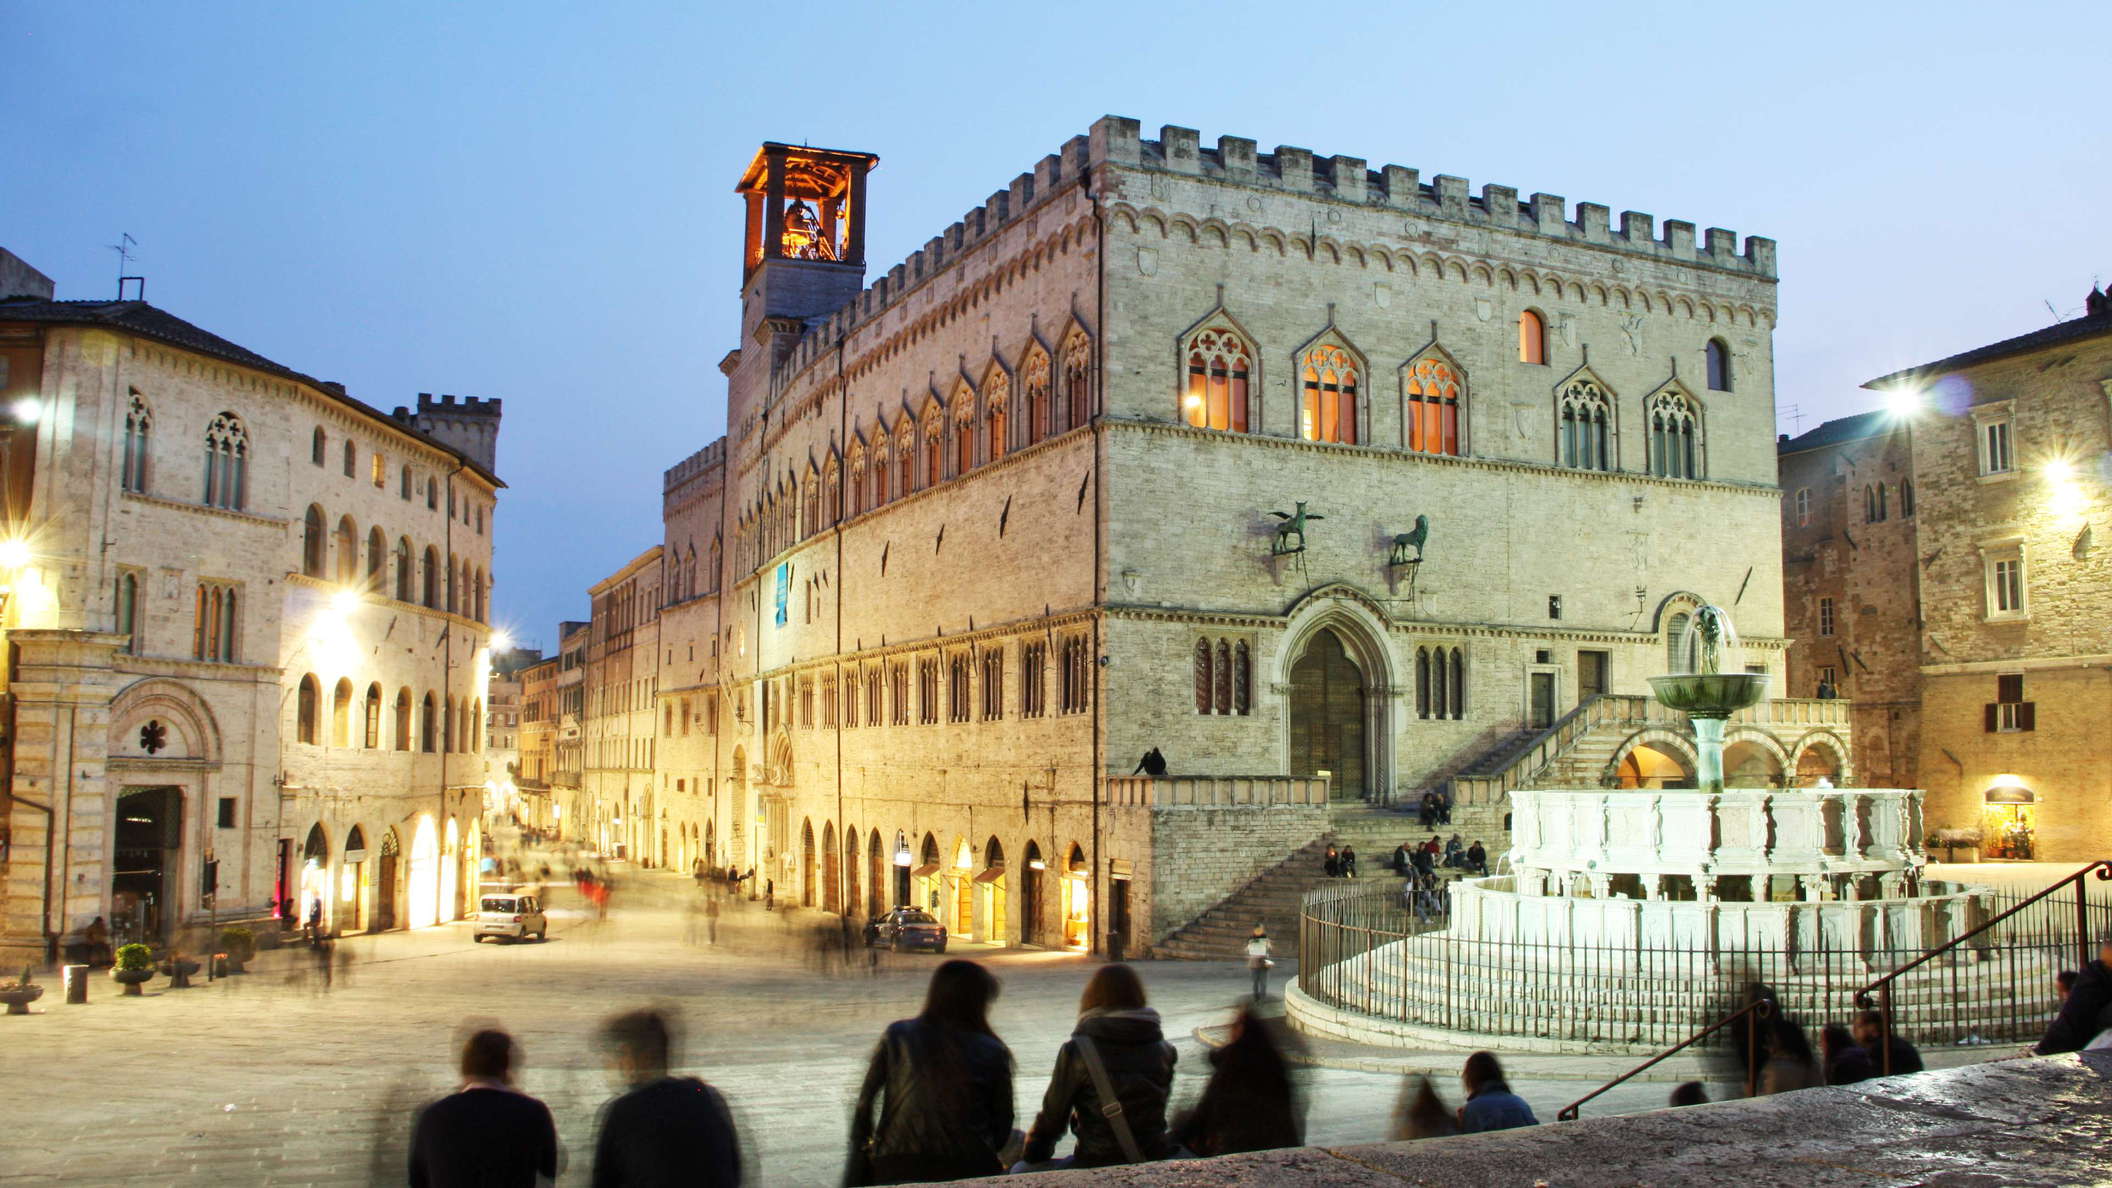 Perugia | Piazza 4 Novembre